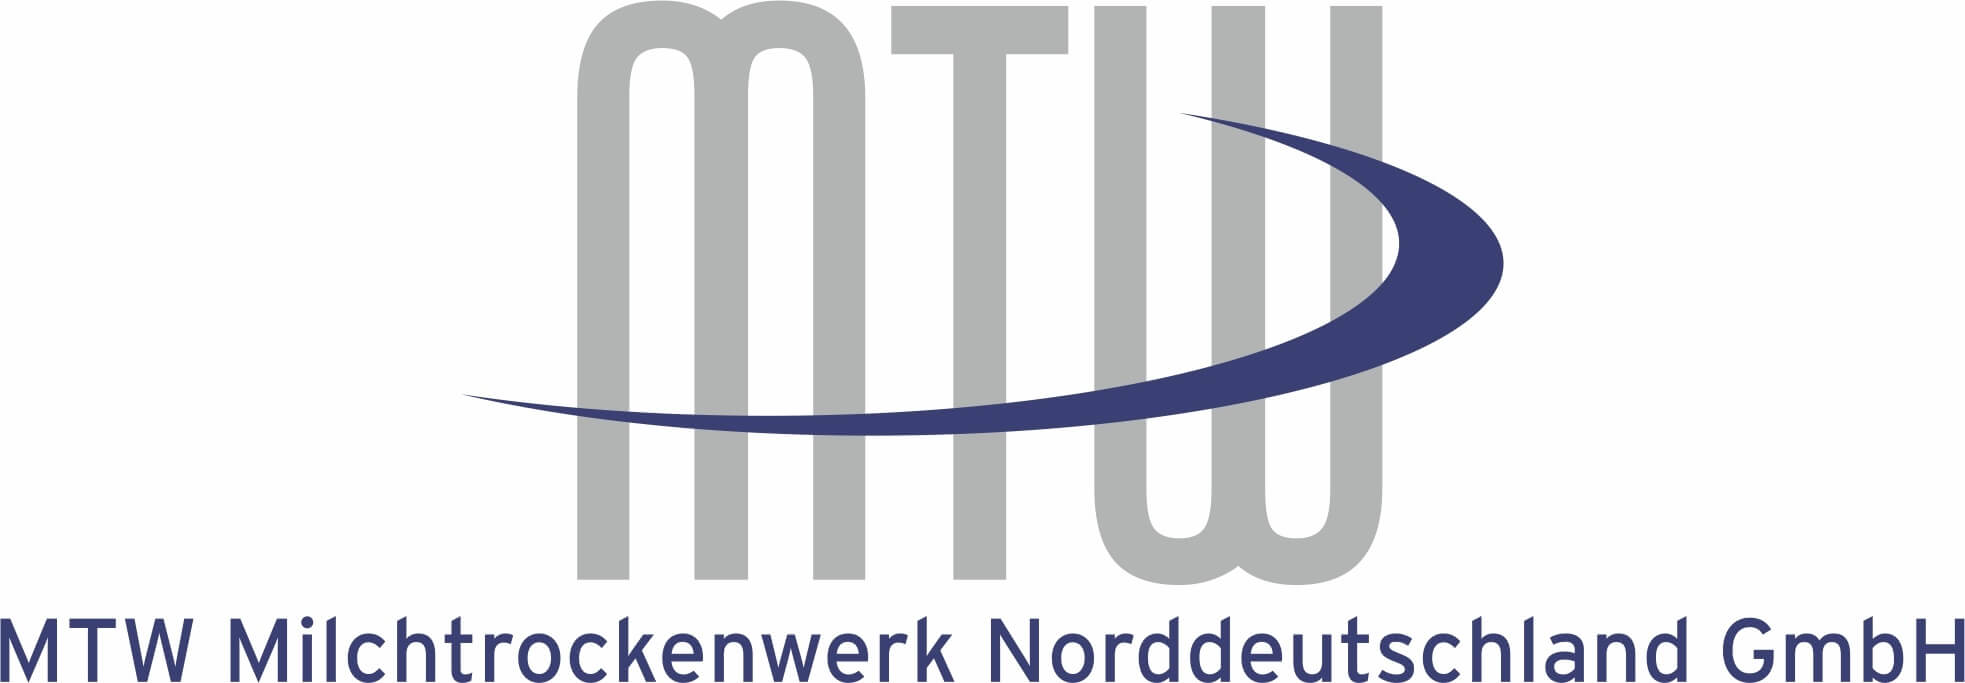 MTW Milchtrockenwerk Norddeutschland GmbH